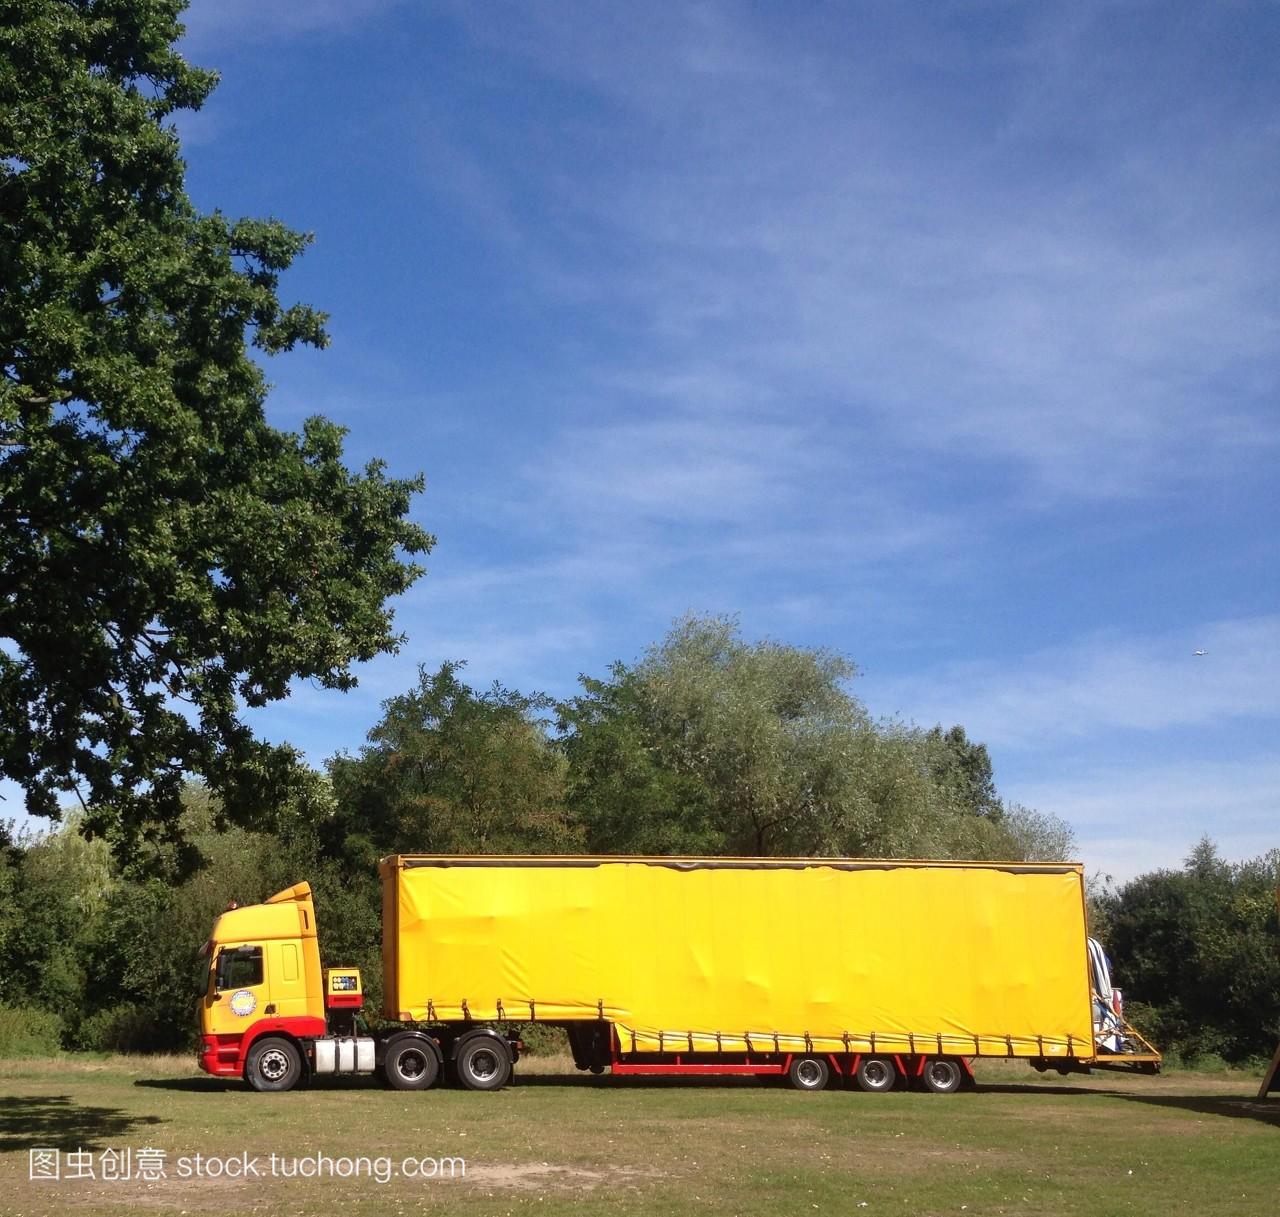 英国英格兰伦敦黄色的卡车货车在农村地区